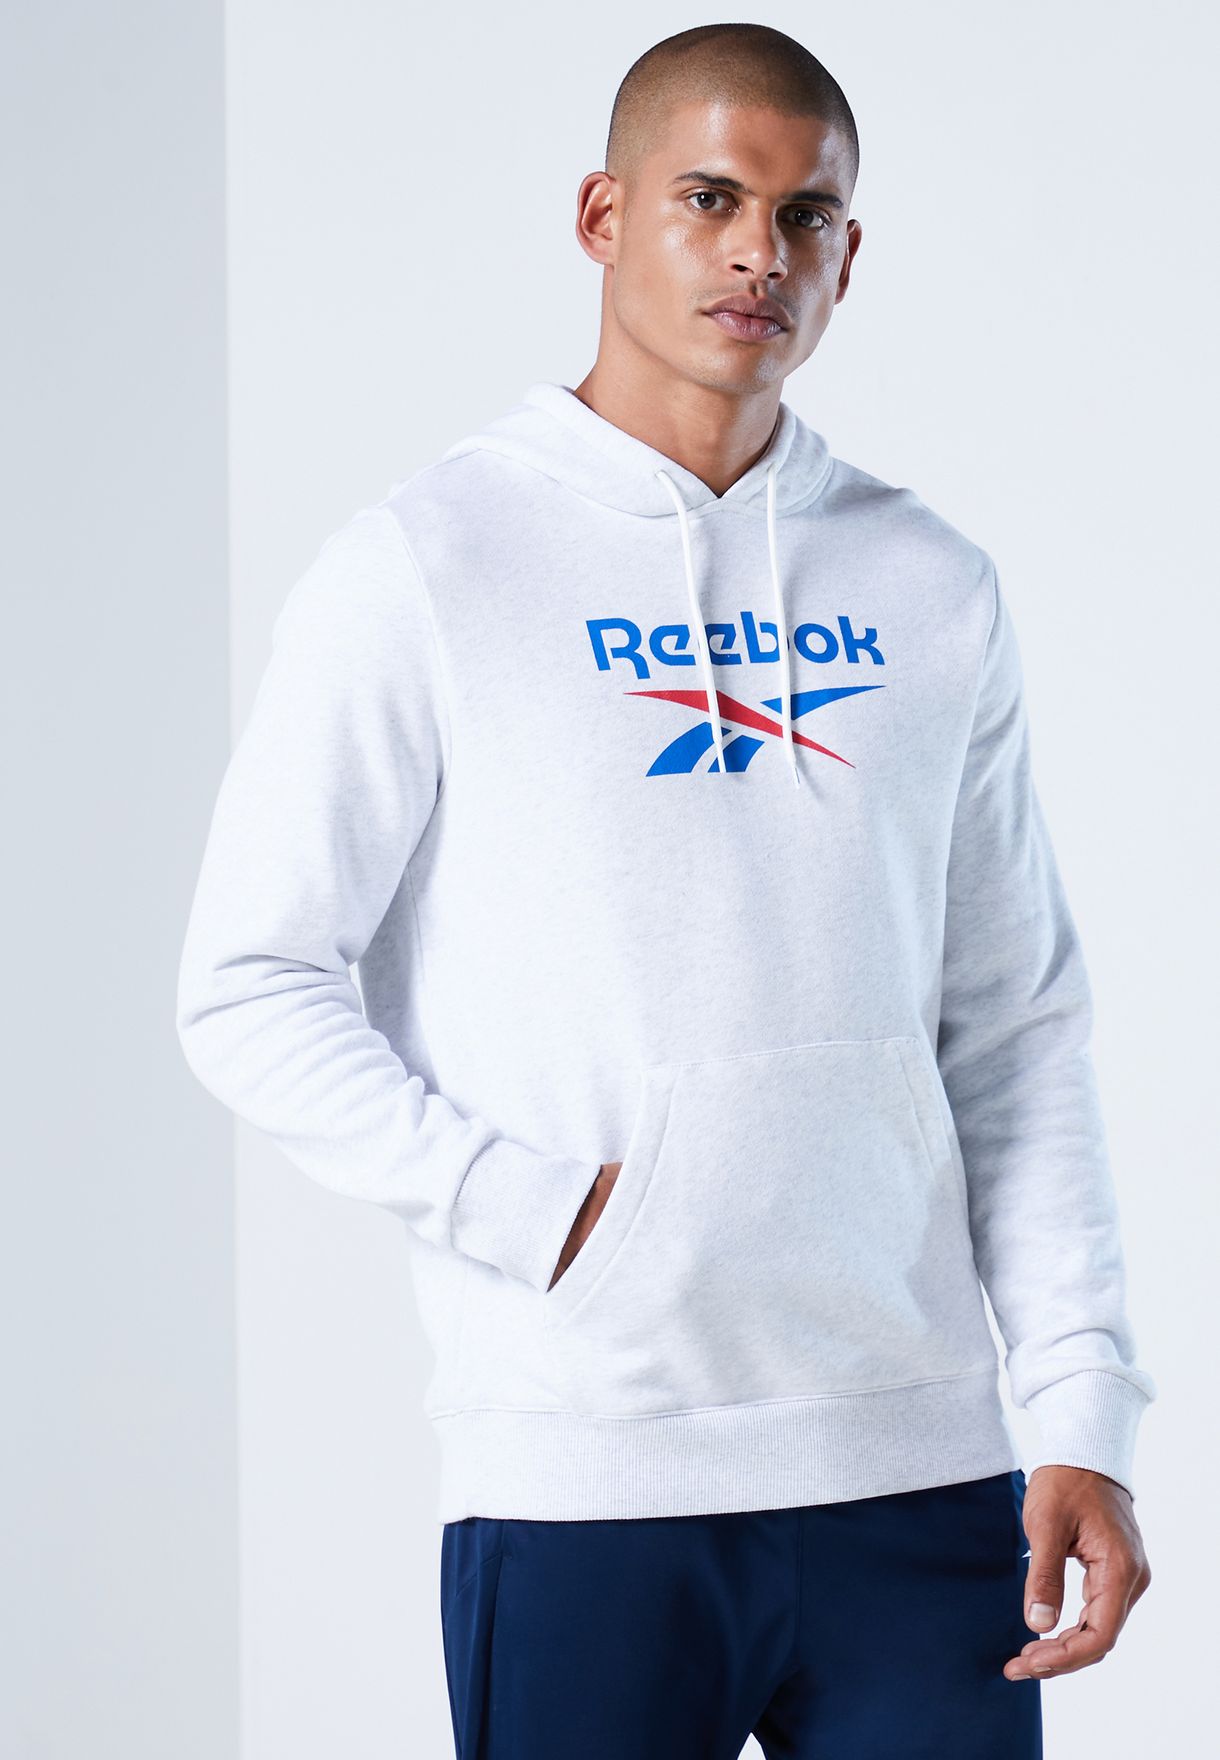 reebok vector hoodie